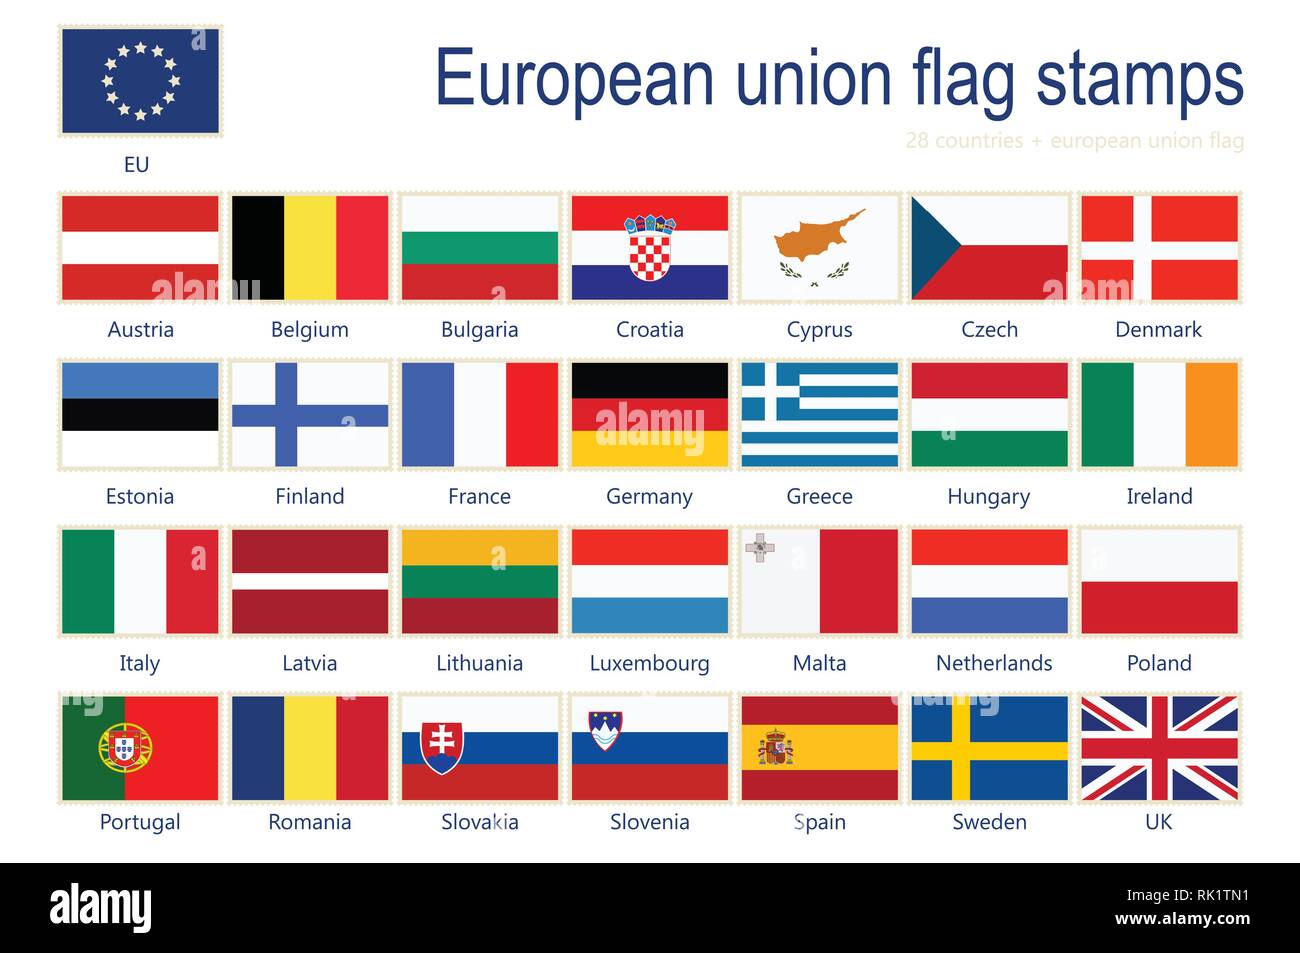 Illustrazione Vettoriale set di Unione europea bandiere sui francobolli con i nomi. 29 Bandiere+ bandiera UE. Illustrazione Vettoriale